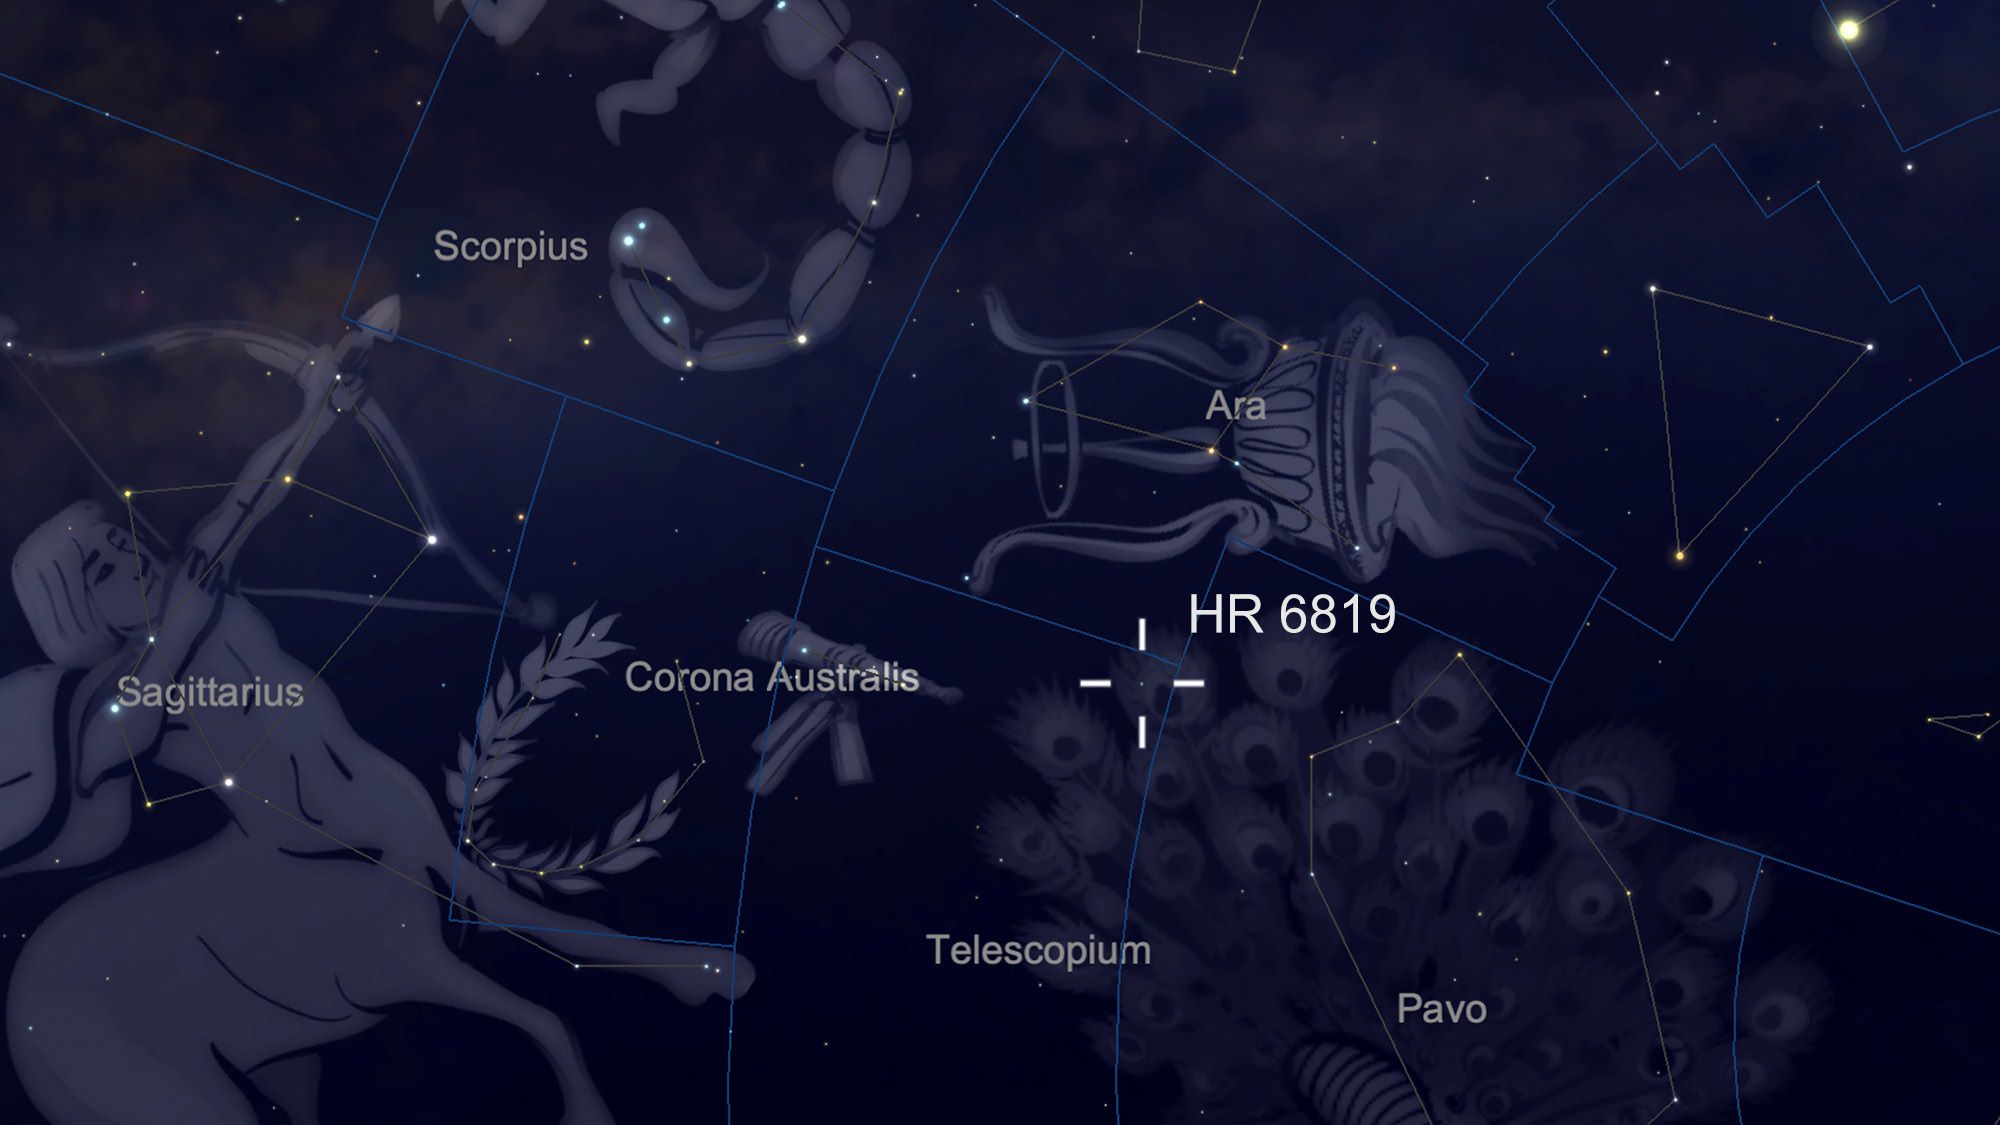 منظومه HR 6819 در آسمان شب